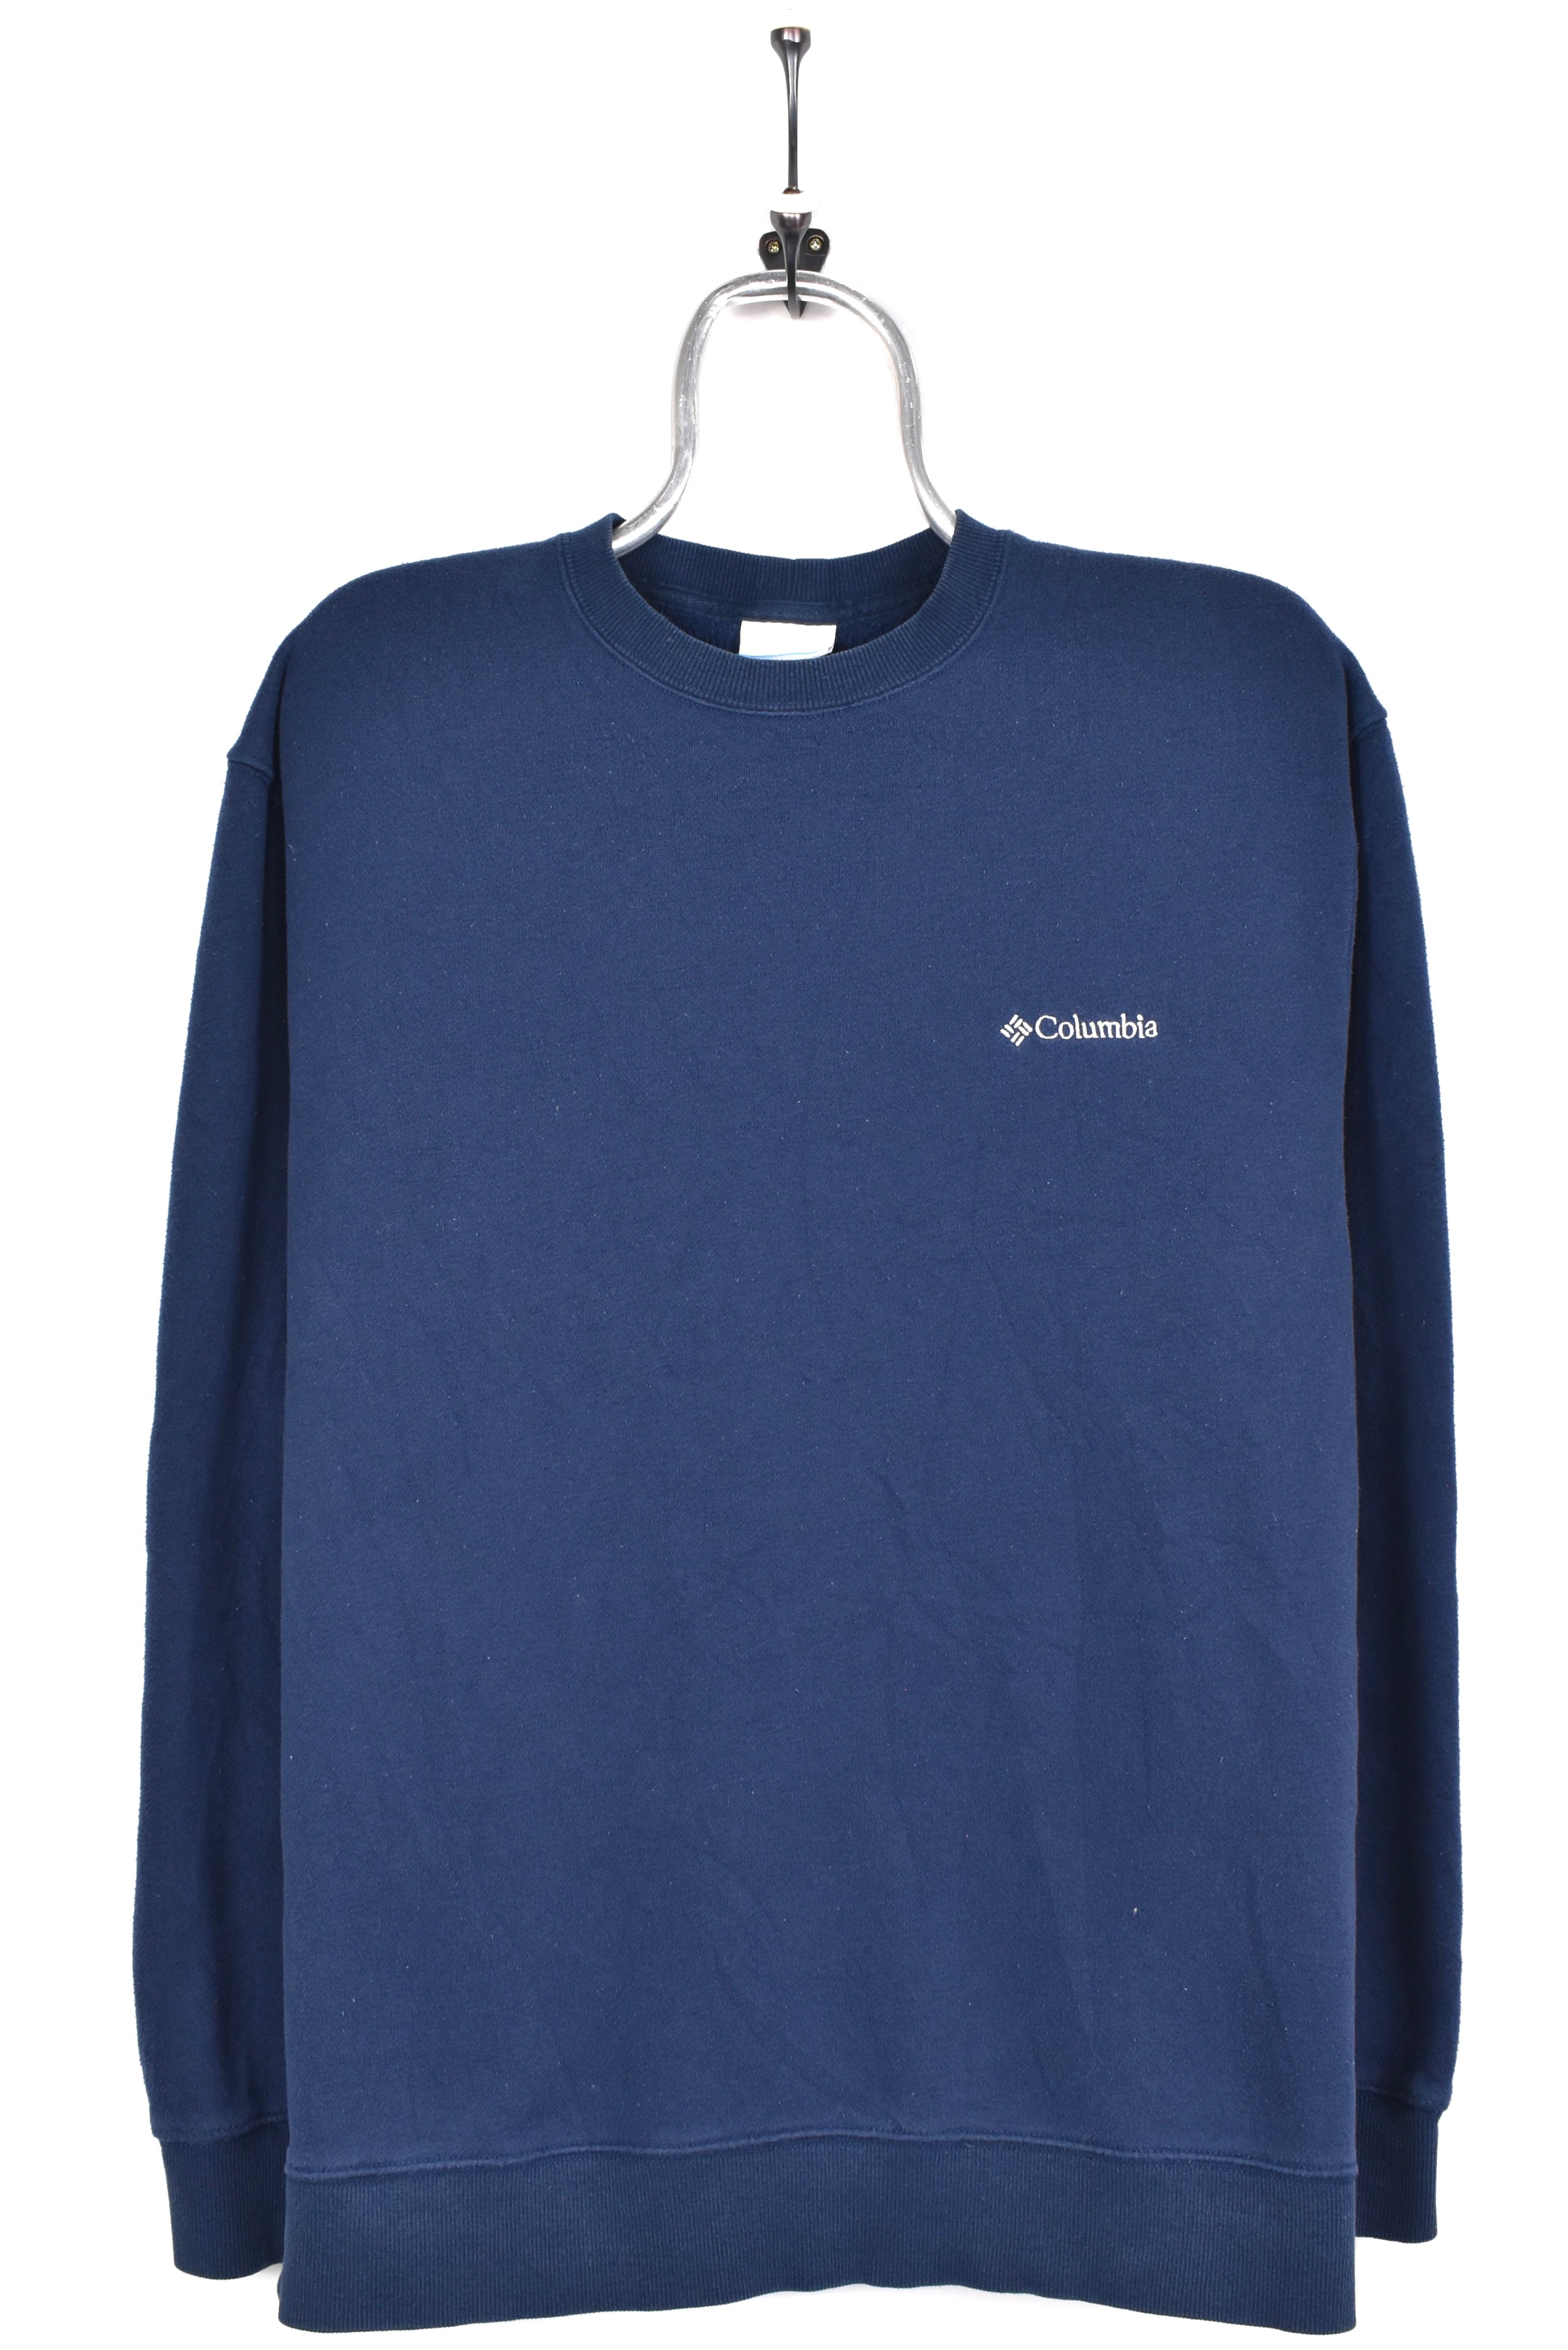 Vintage Columbia sweatshirt, navy blue embroidered crewneck - AU Medium COLUMBIA